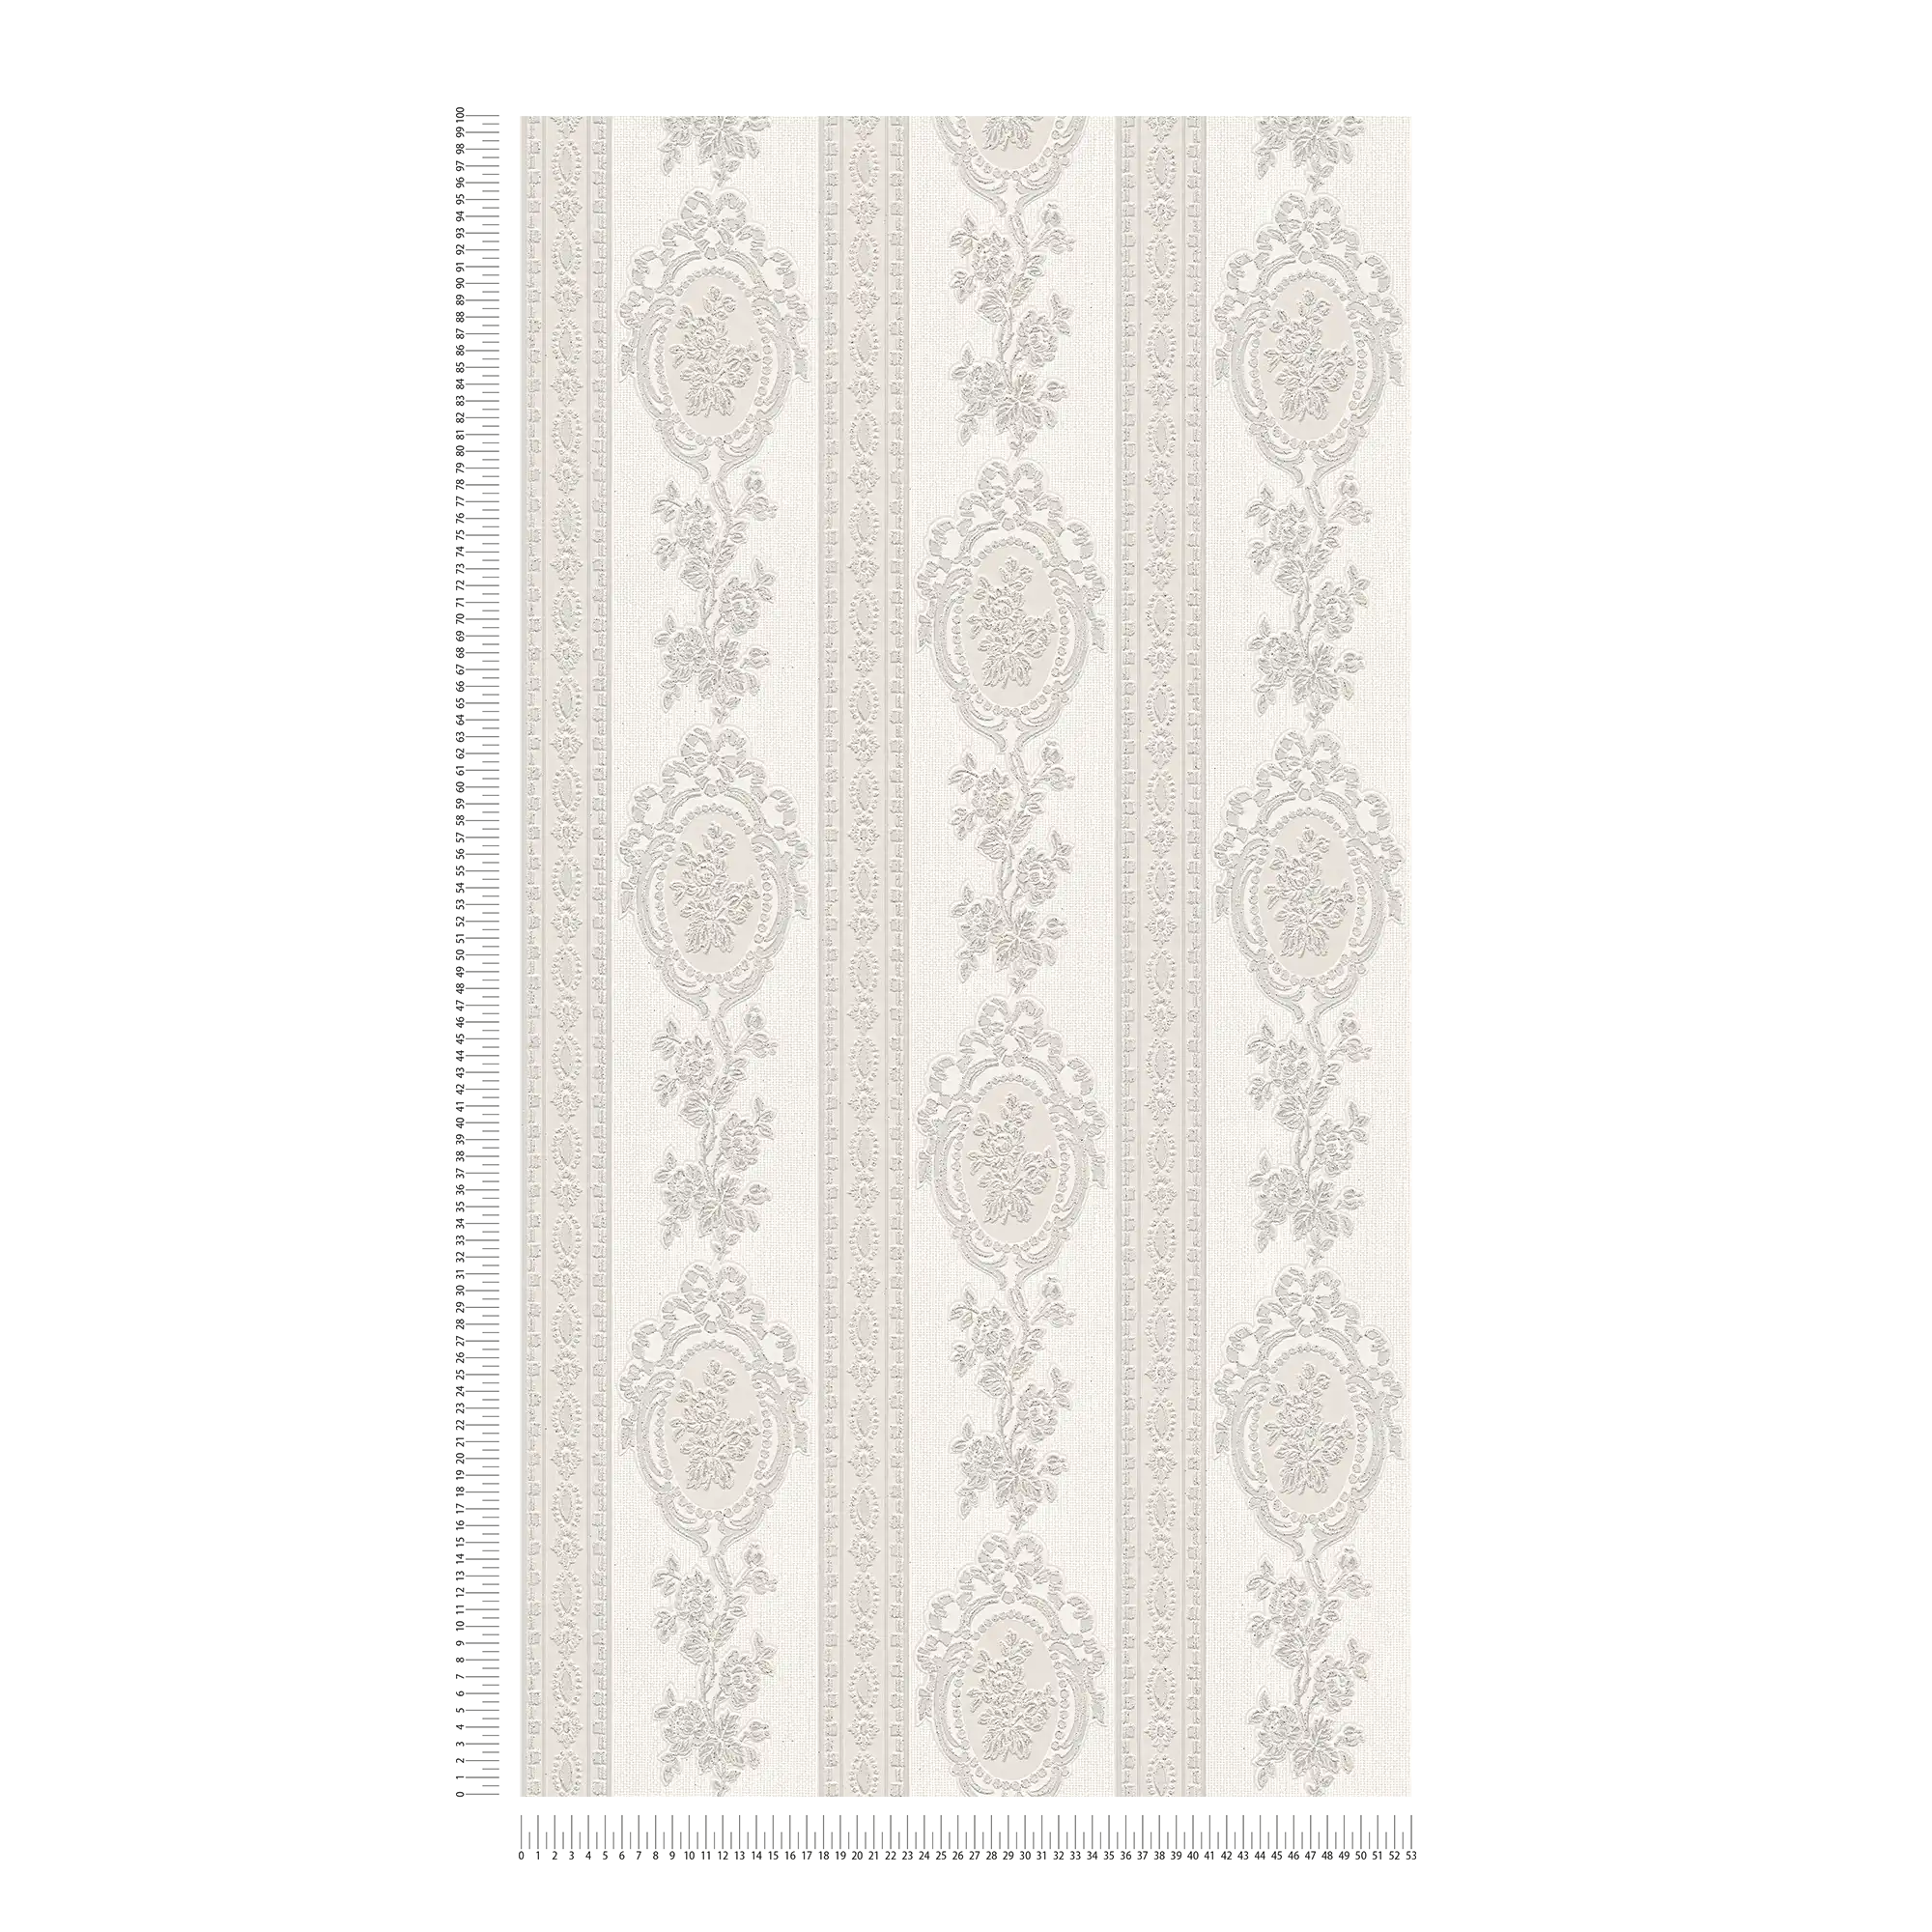             Ornamenttapete florale Elemente, Streifen und Blumen – Grau, Weiß, Silber
        